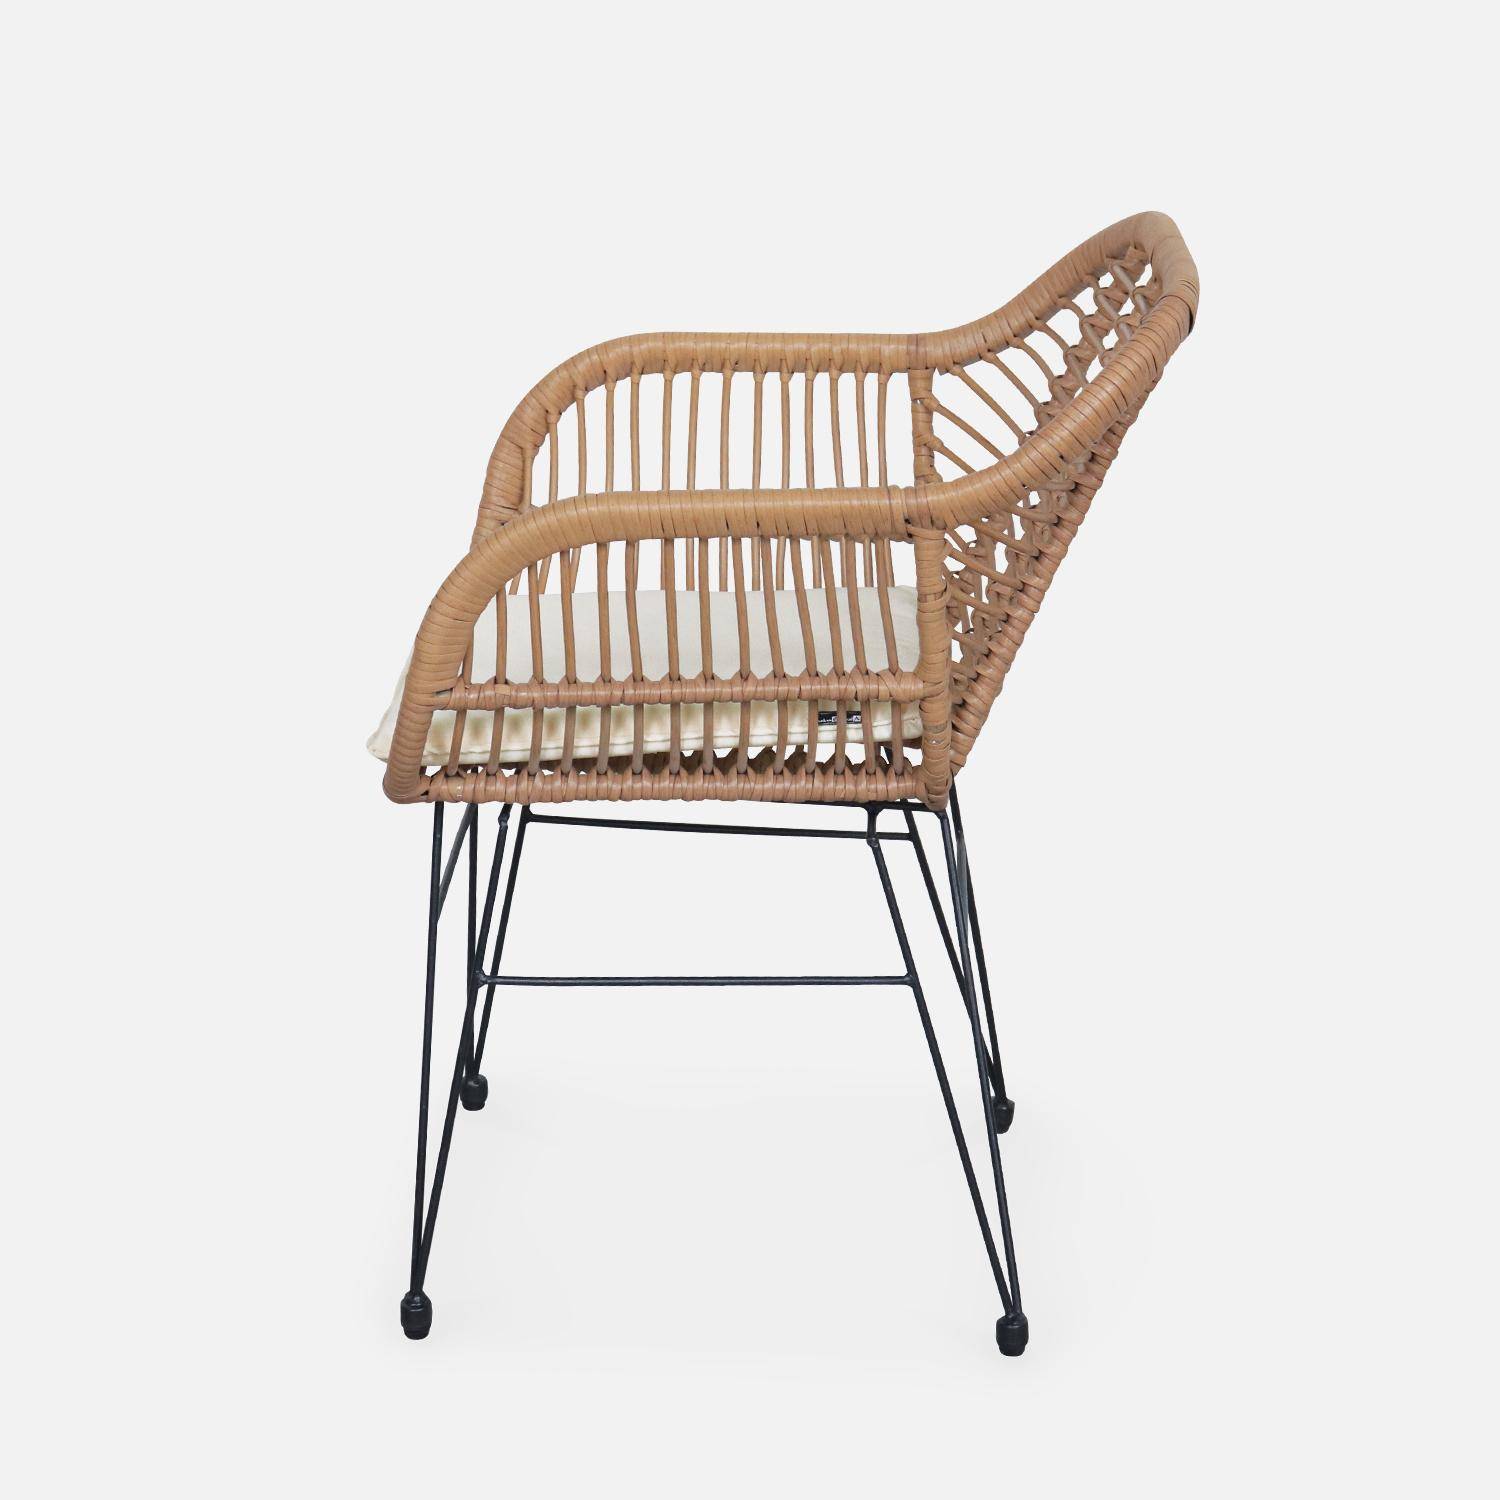 Set van 2 wicker stoelen met bamboe effect, zwart metalen frame, afneembare hoezen, beige kussen Photo7